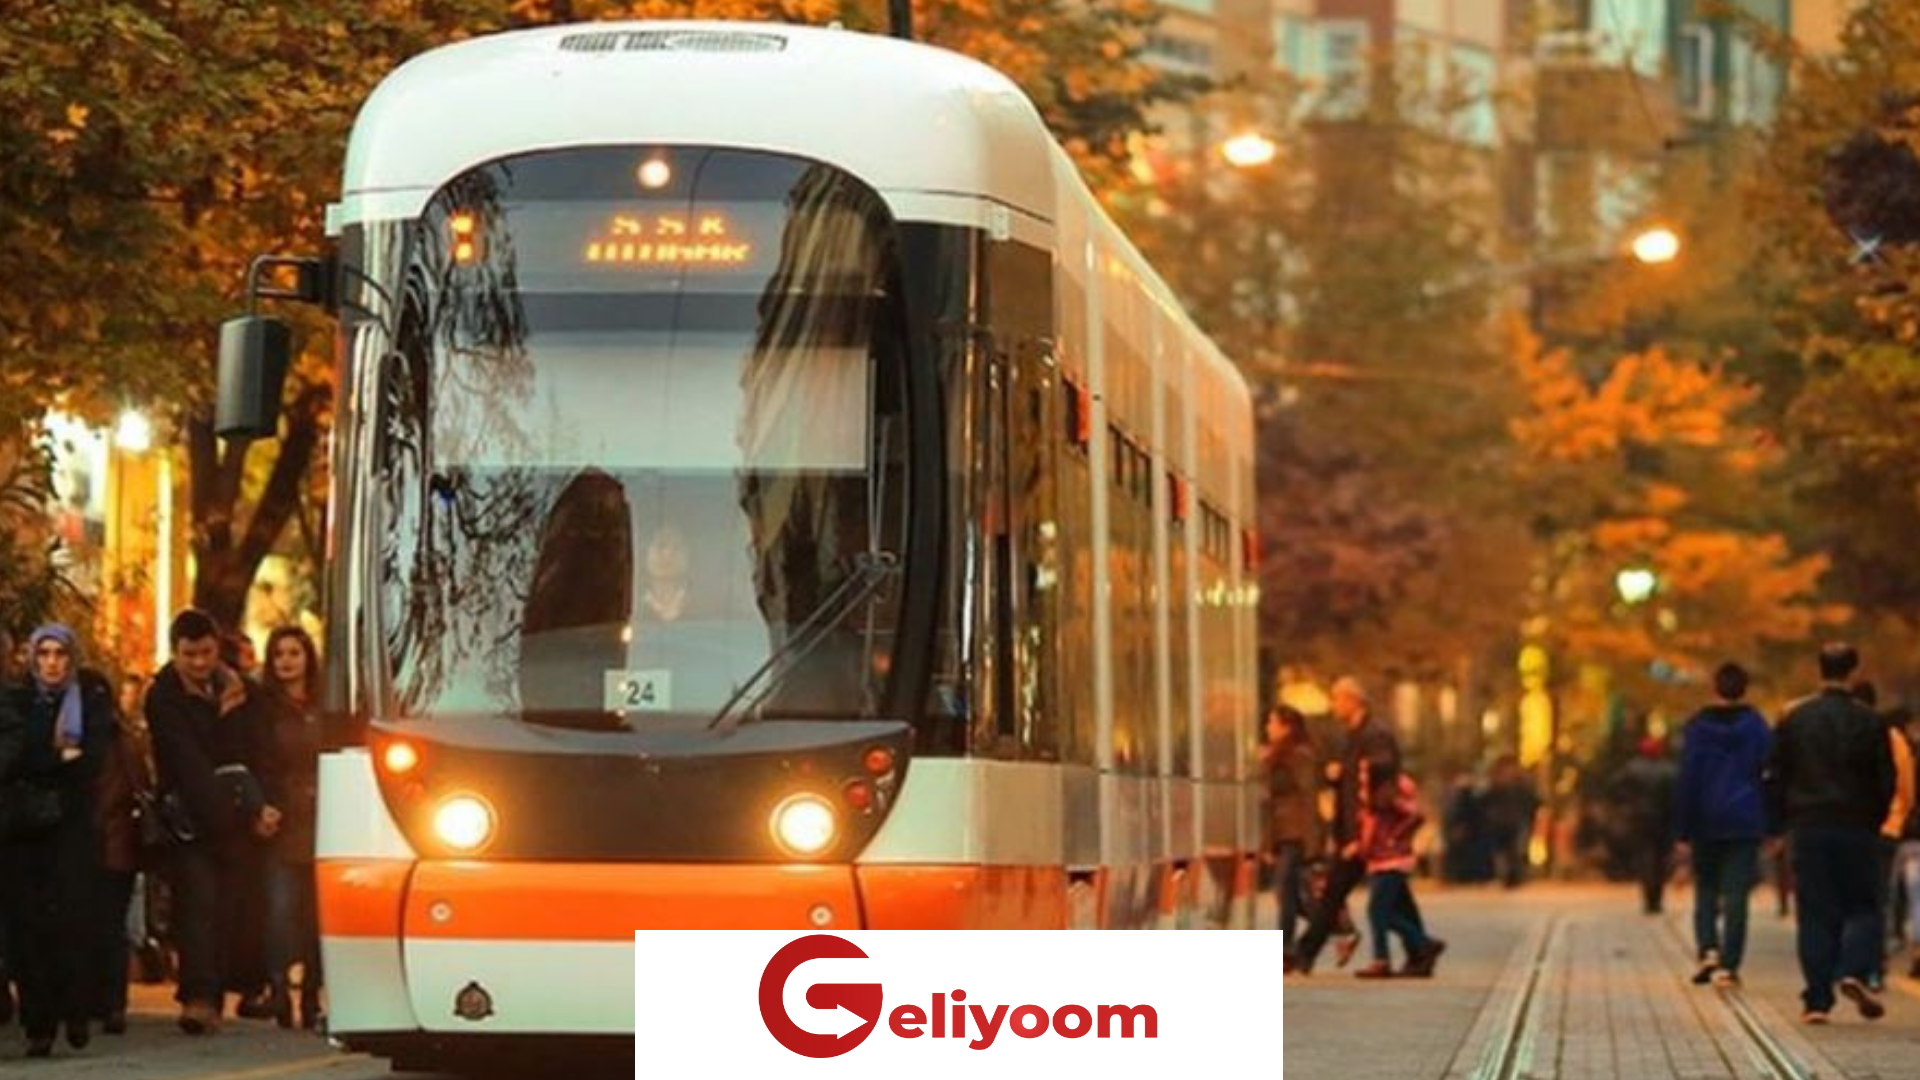 Eskişehir’de Tramvay Kazası Sonrası Mahalle Sakinleri ve Esnaflar Önlemler İstiyor